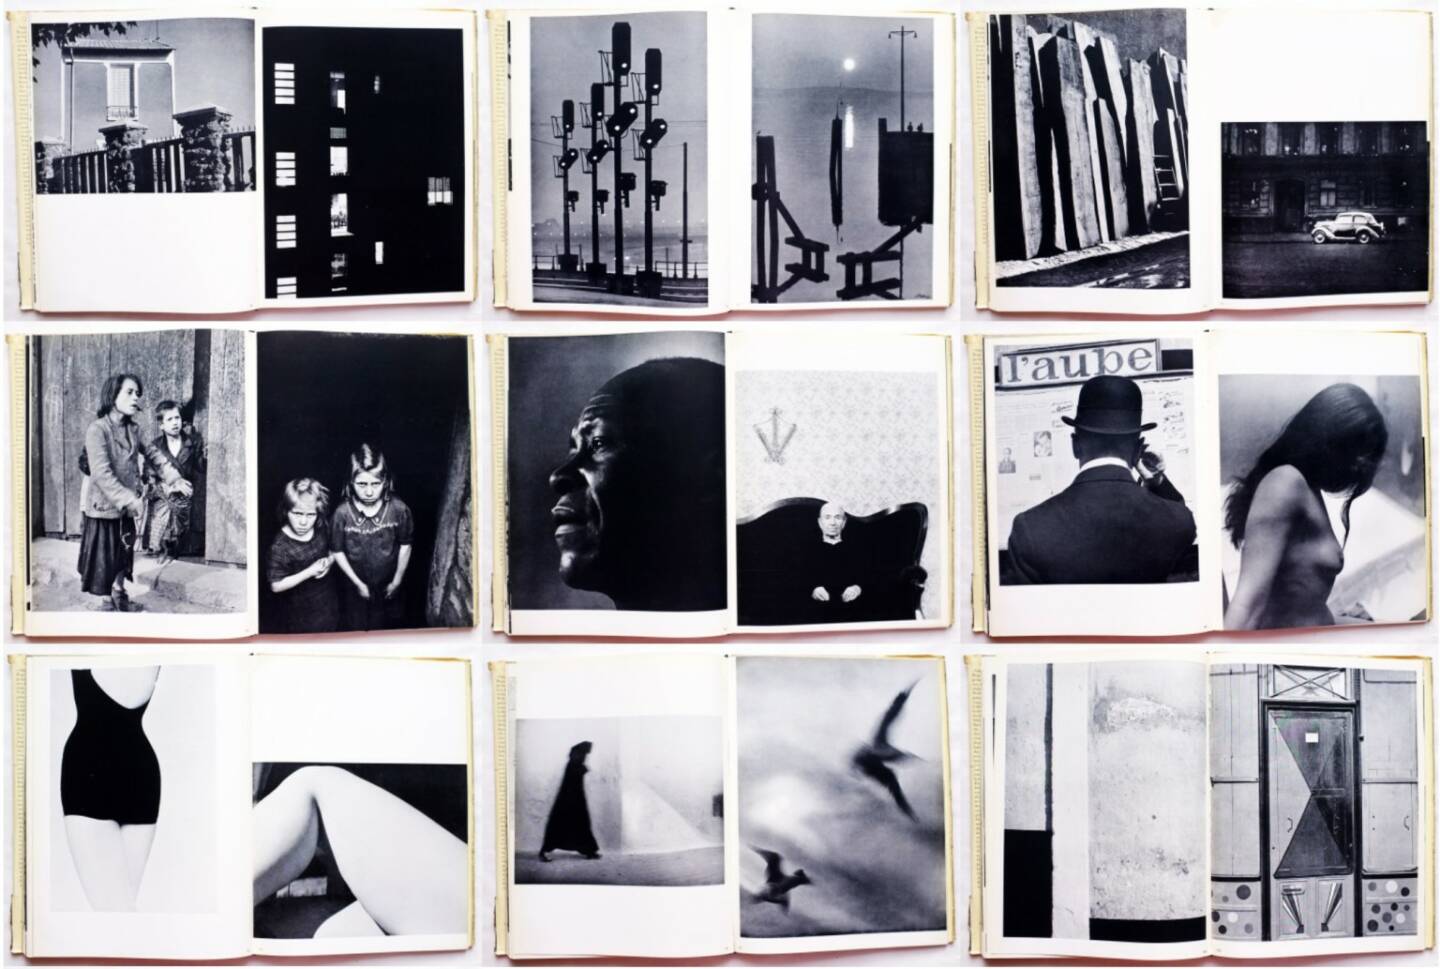 Otto Steinert - Subjektive Fotografie - Ein Bildband moderner Fotografie, Brüder Auer Verlag 1952, Beispielseiten, sample spreads - http://josefchladek.com/book/otto_steinert_-_subjektive_fotografie_-_ein_bildband_moderner_fotografie